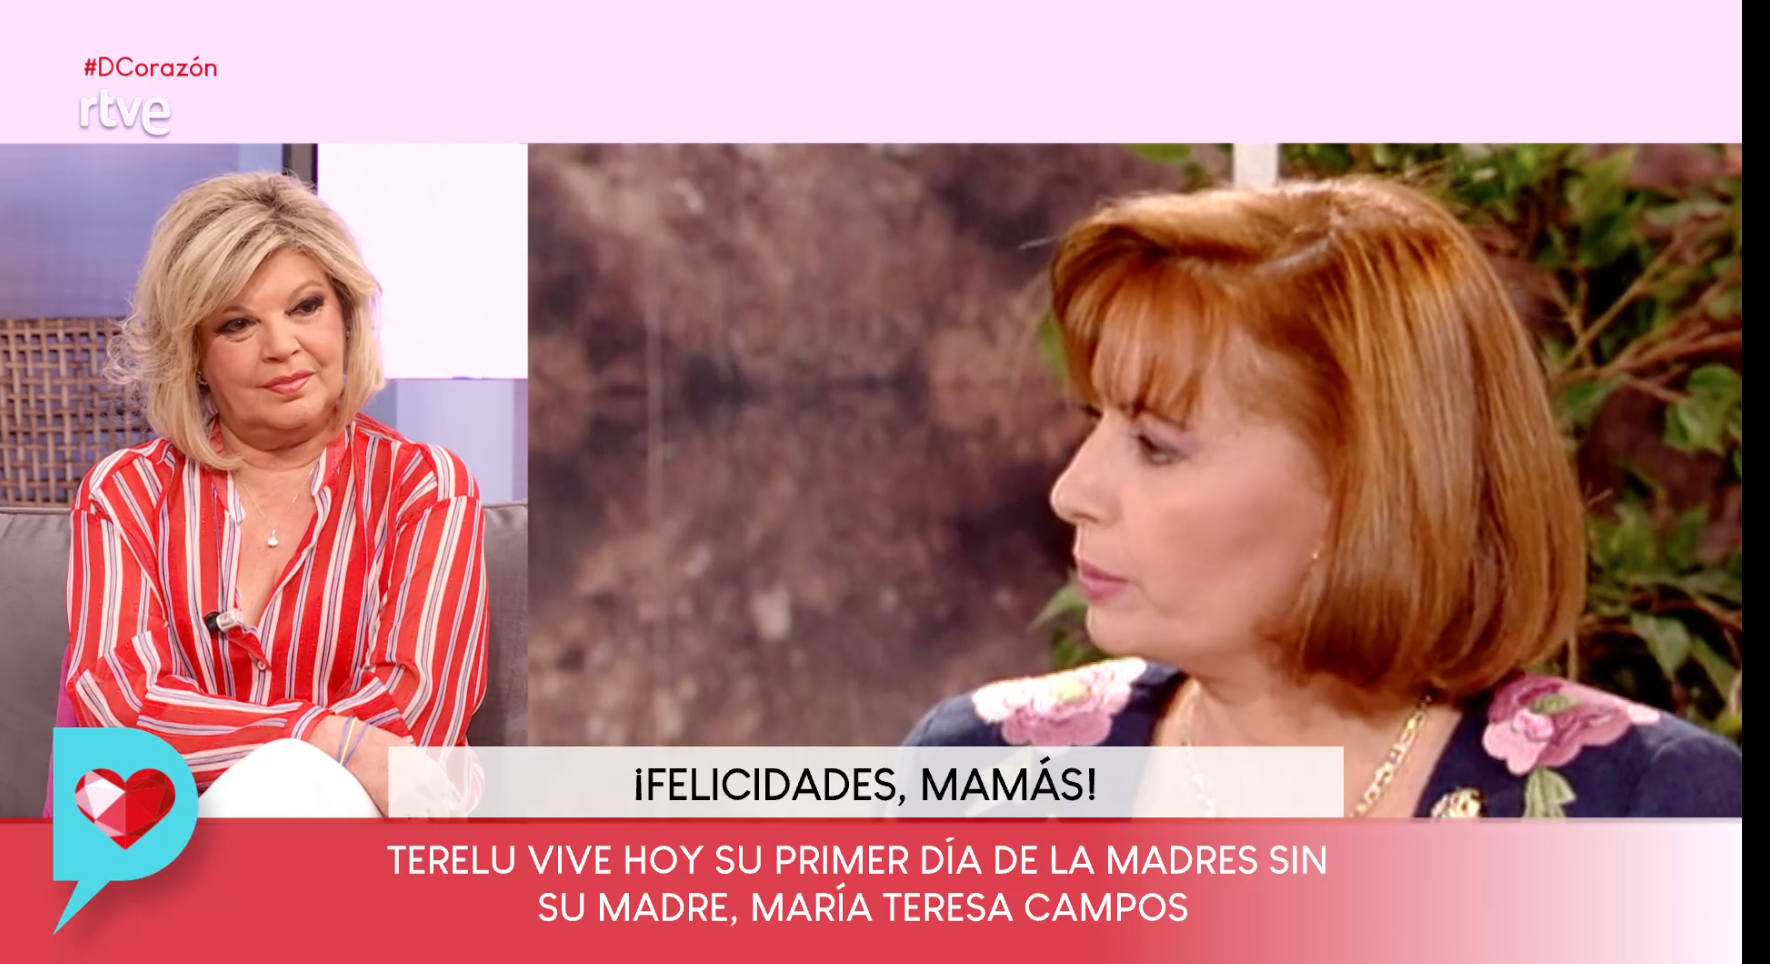 Terelu Campos en el Día de la Madre en 'DCorazón'